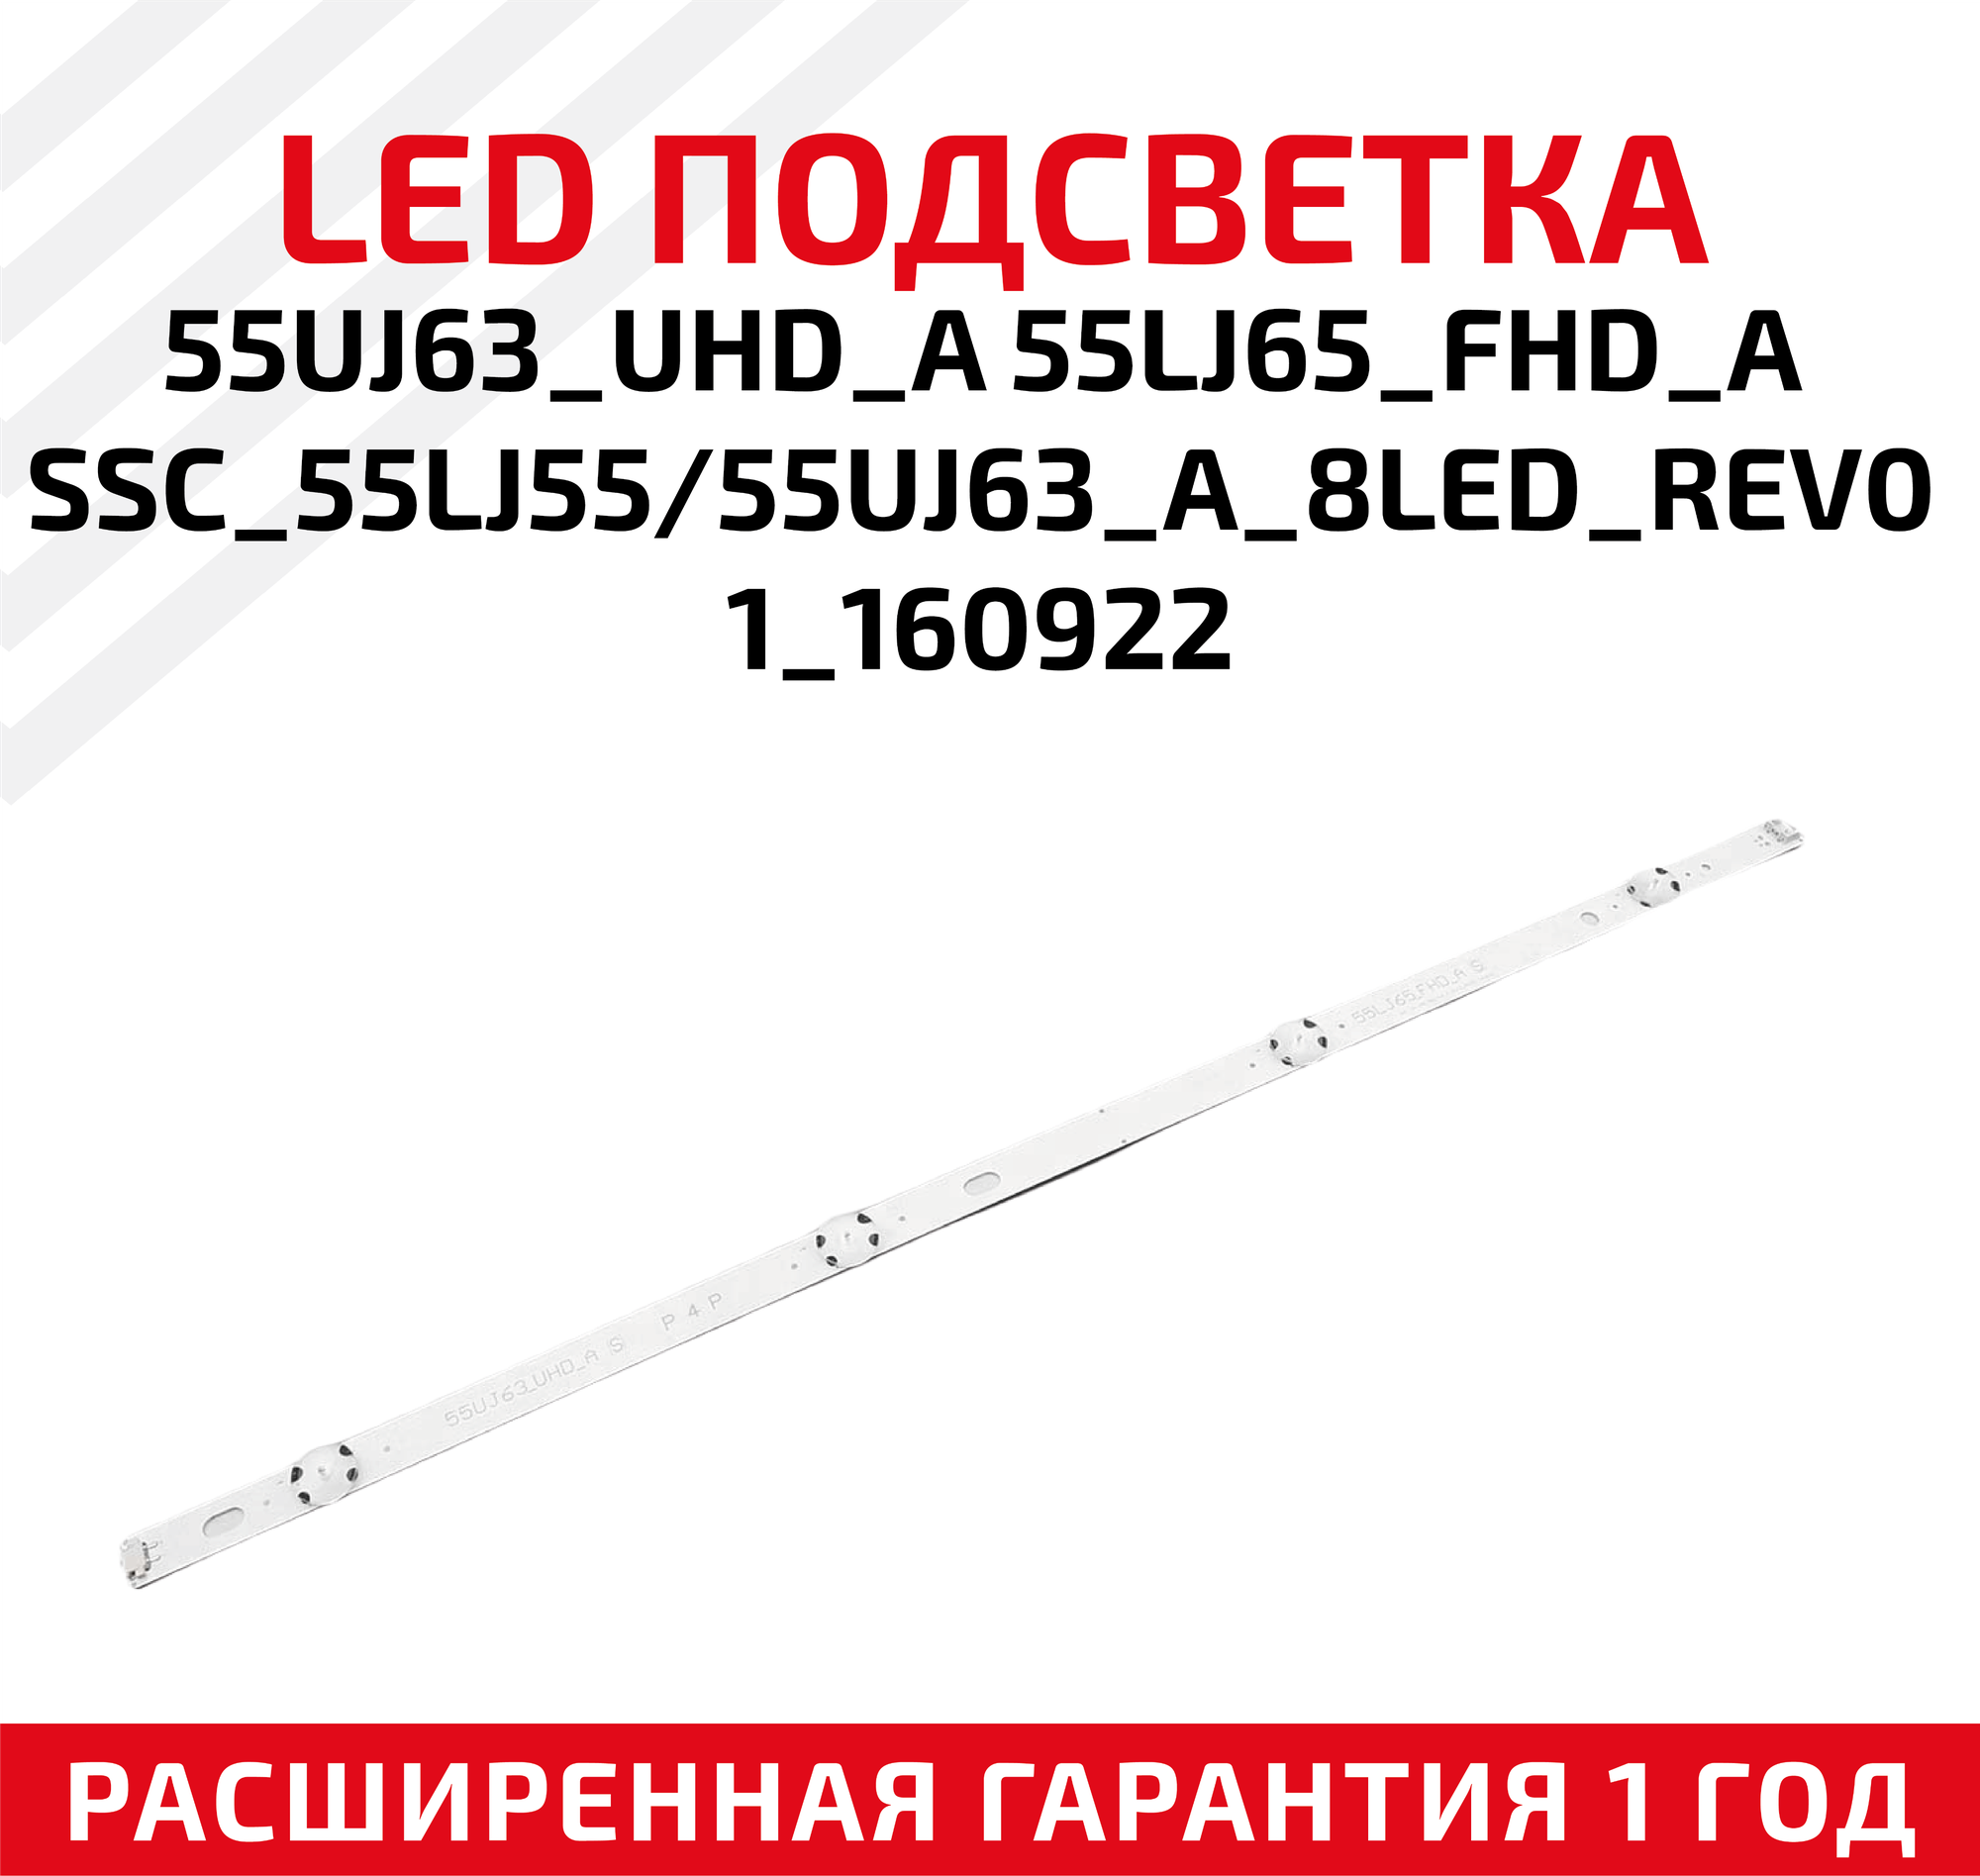 LED подсветка (светодиодная планка) для телевизора 55UJ63_UHD_A 55LJ65_FHD_ASSC_55LJ55 55UJ63_A_8LED_REV01_160922